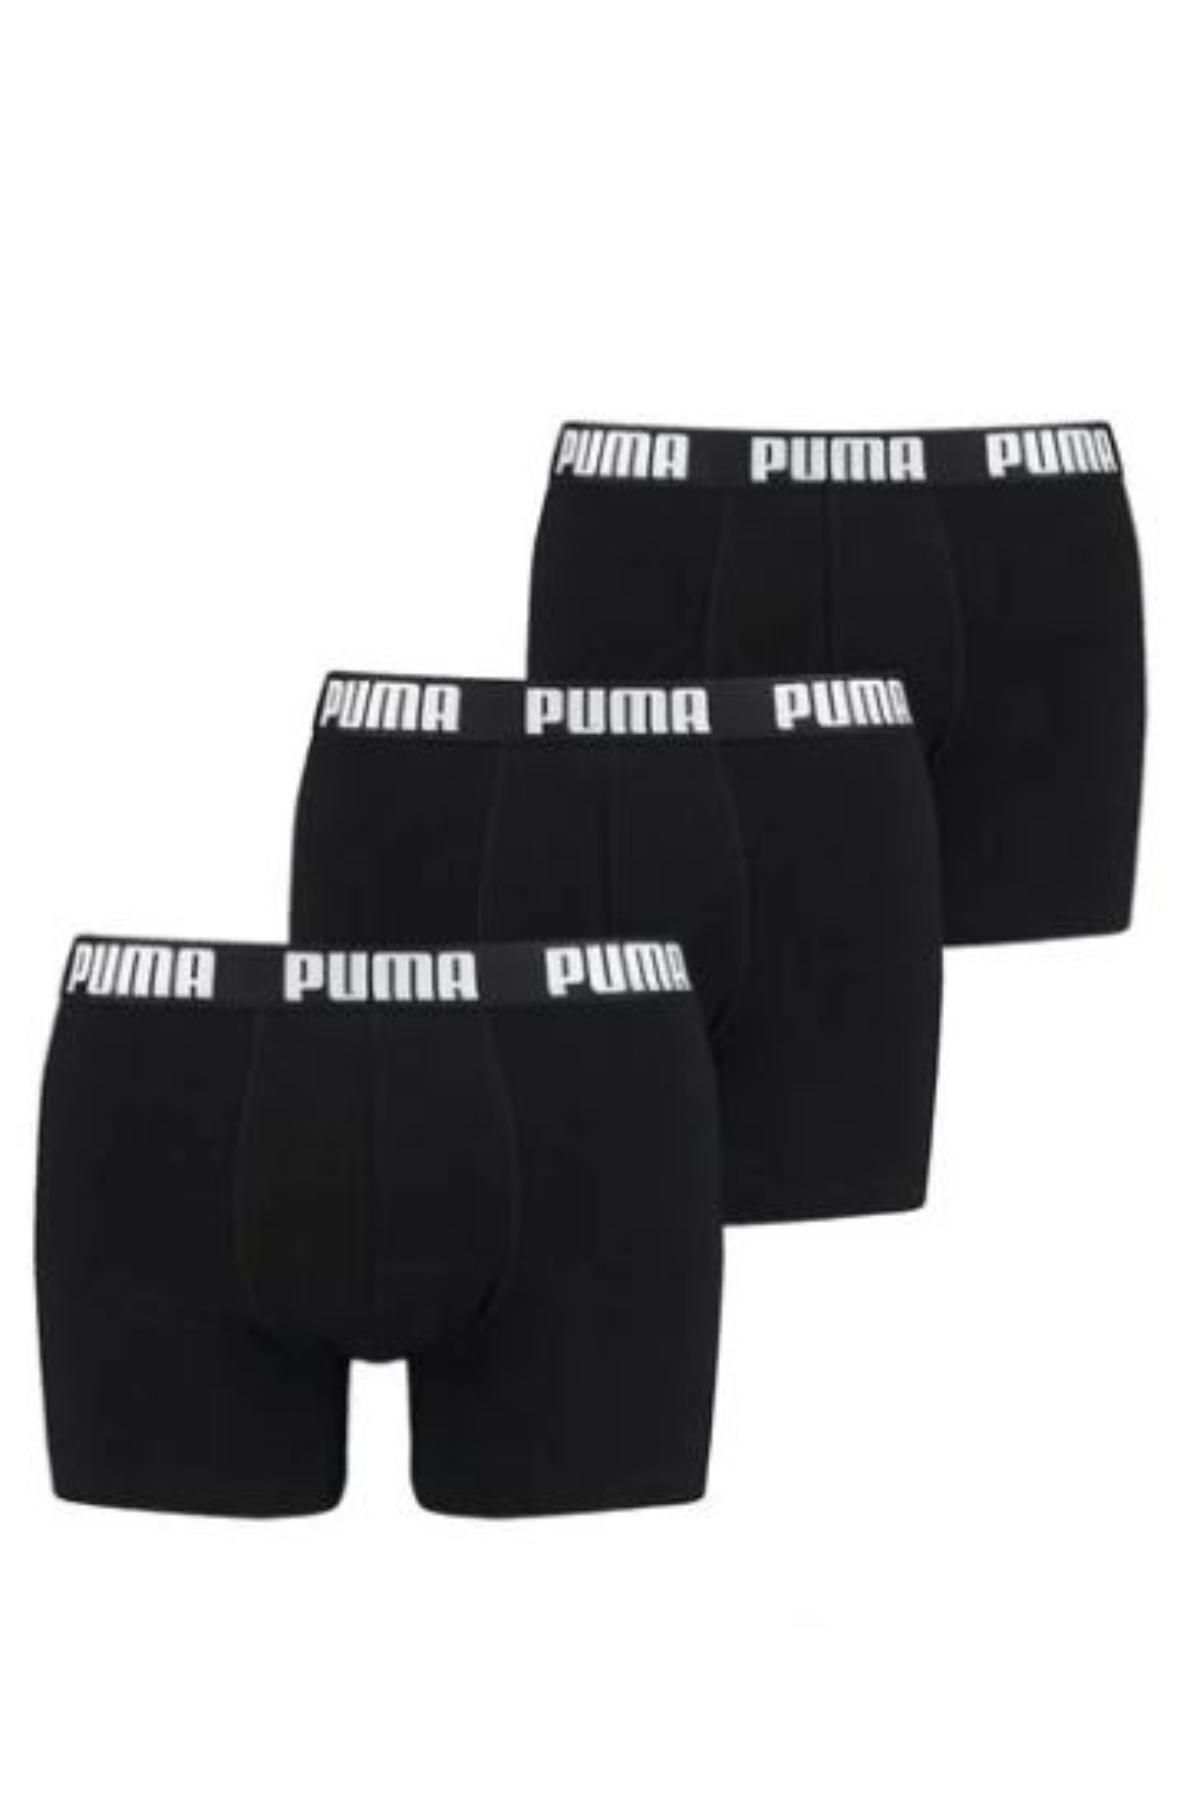 PUMA Puma Men Everyday Boxer 3P Black Black Men Boxers